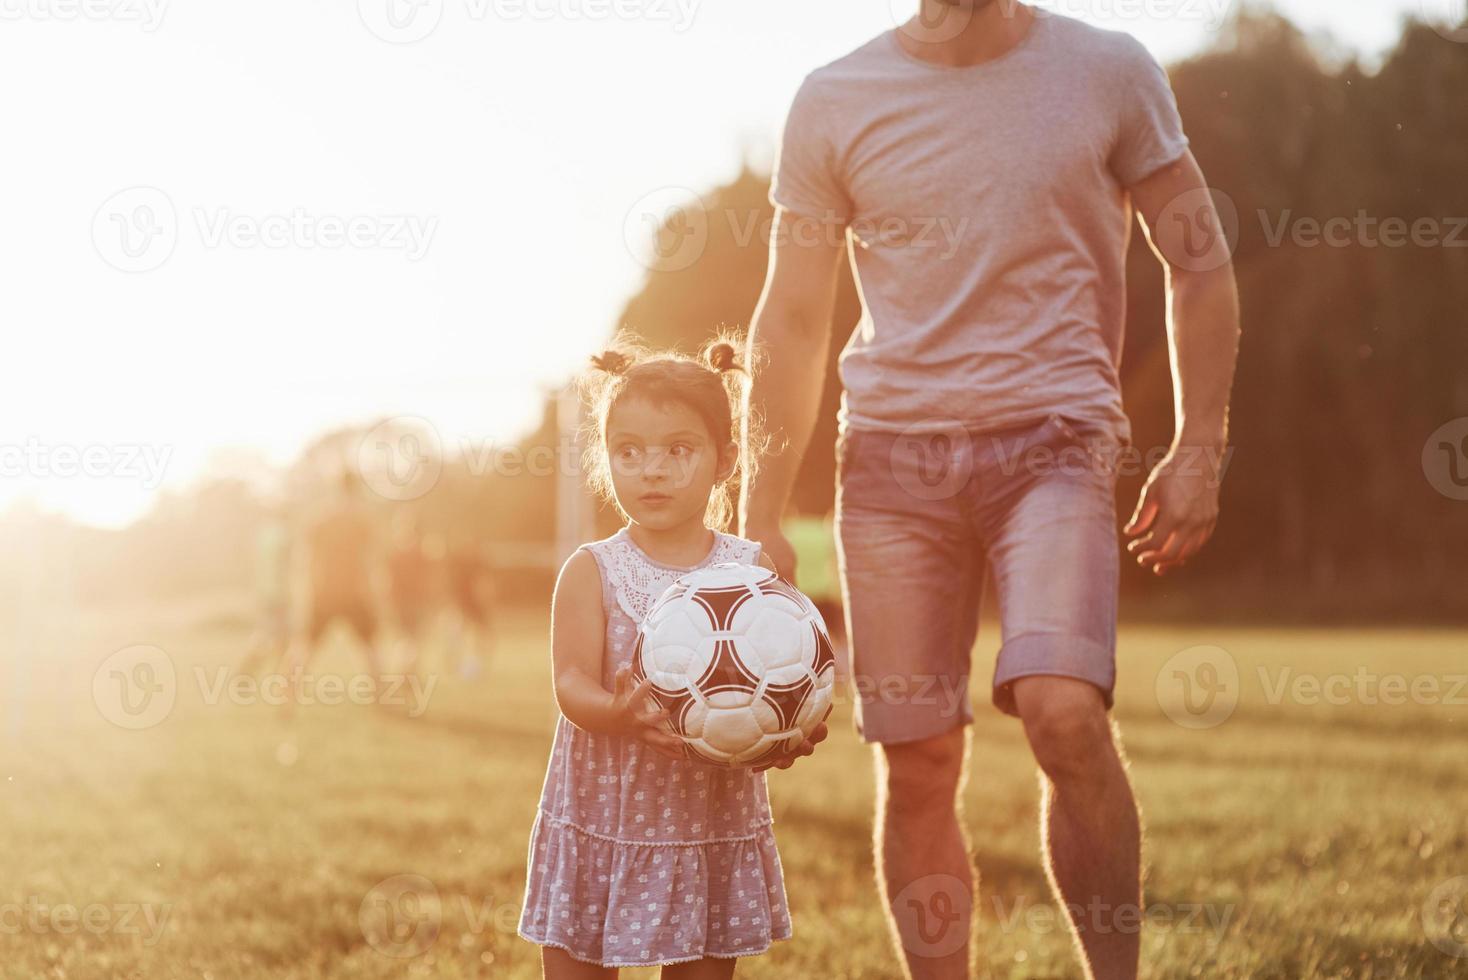 chiedendosi fino a che punto questa ragazza può calciare quel pallone. foto di papà con sua figlia in un bellissimo prato e boschi sullo sfondo